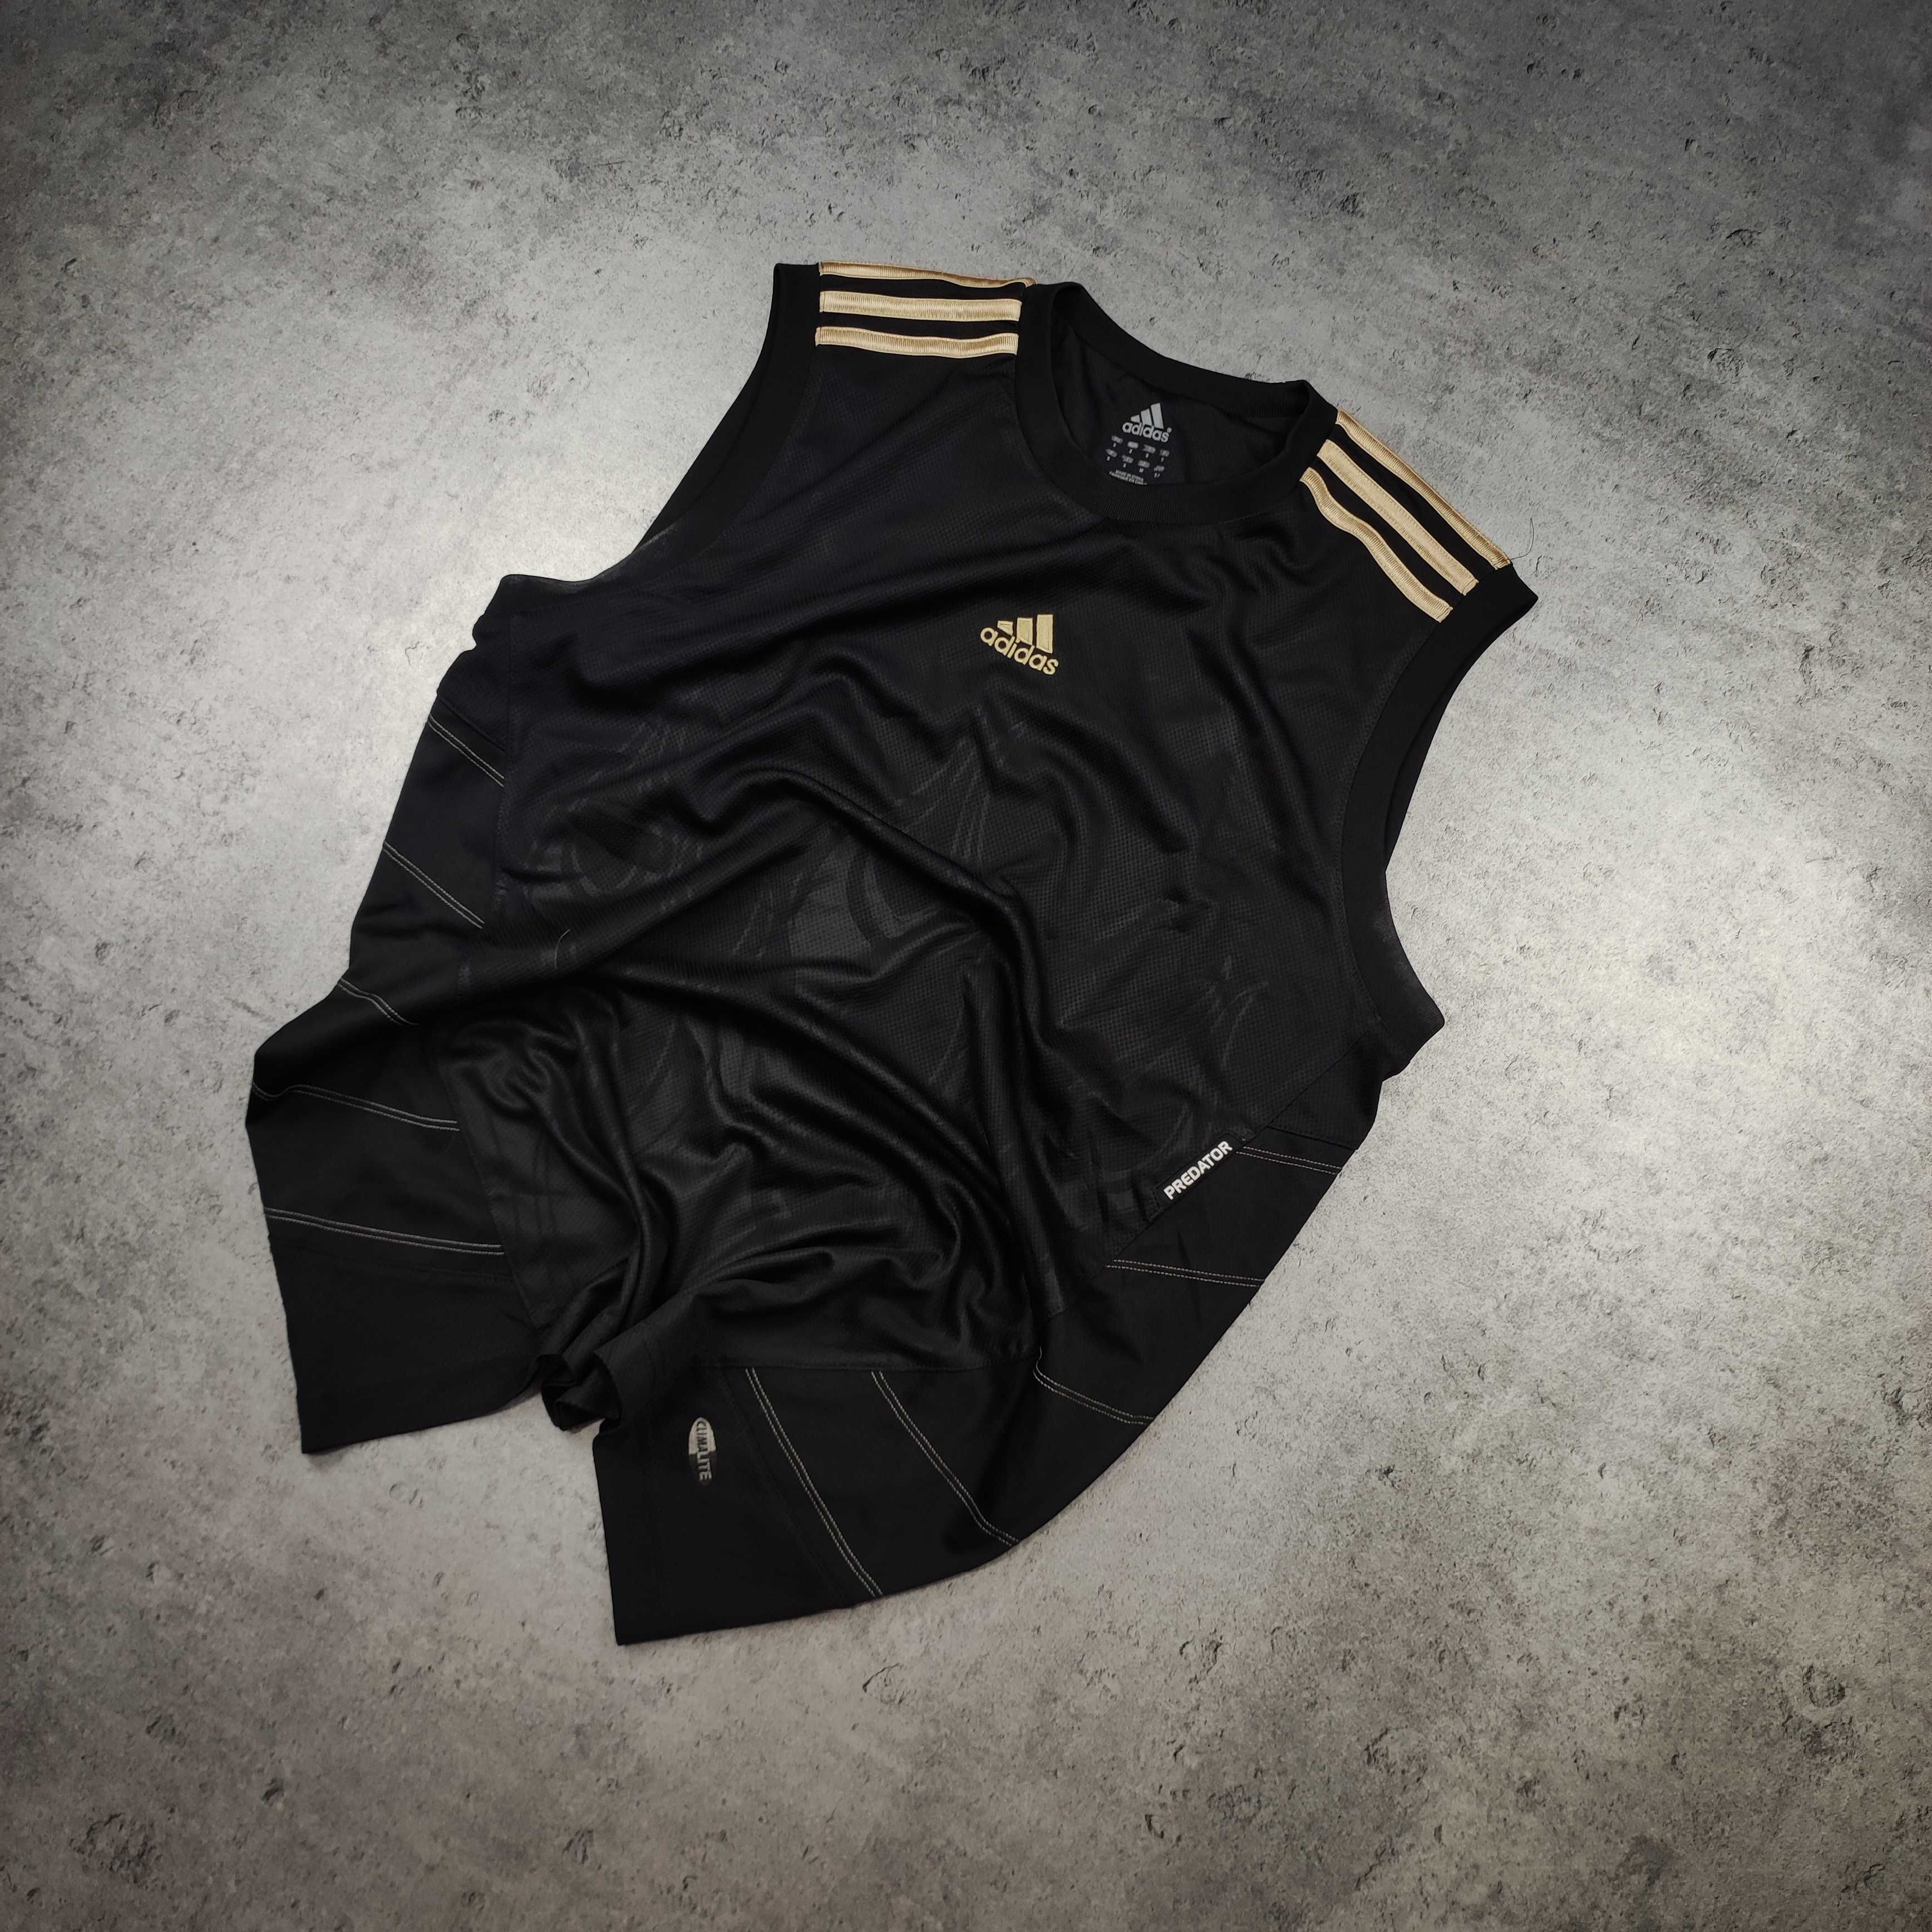 MĘSKA Koszulka Sportowa Bieg Siłownia Adidas Predator Przewiewna Logo